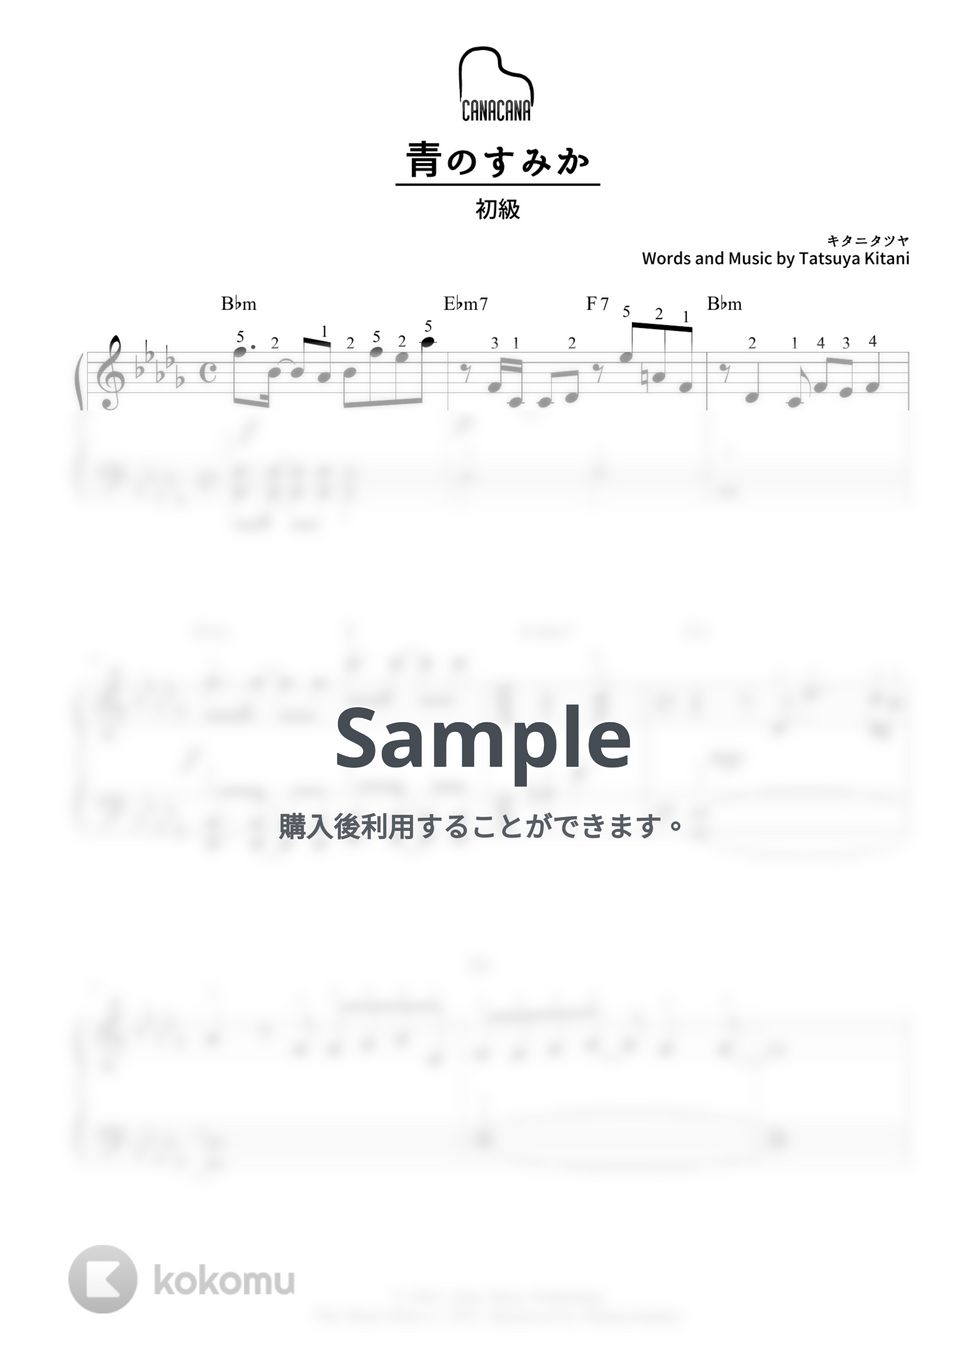 キタニタツヤ - 青のすみか (初級/カタカナドレミ・指番号・コード付き) by CANACANA family